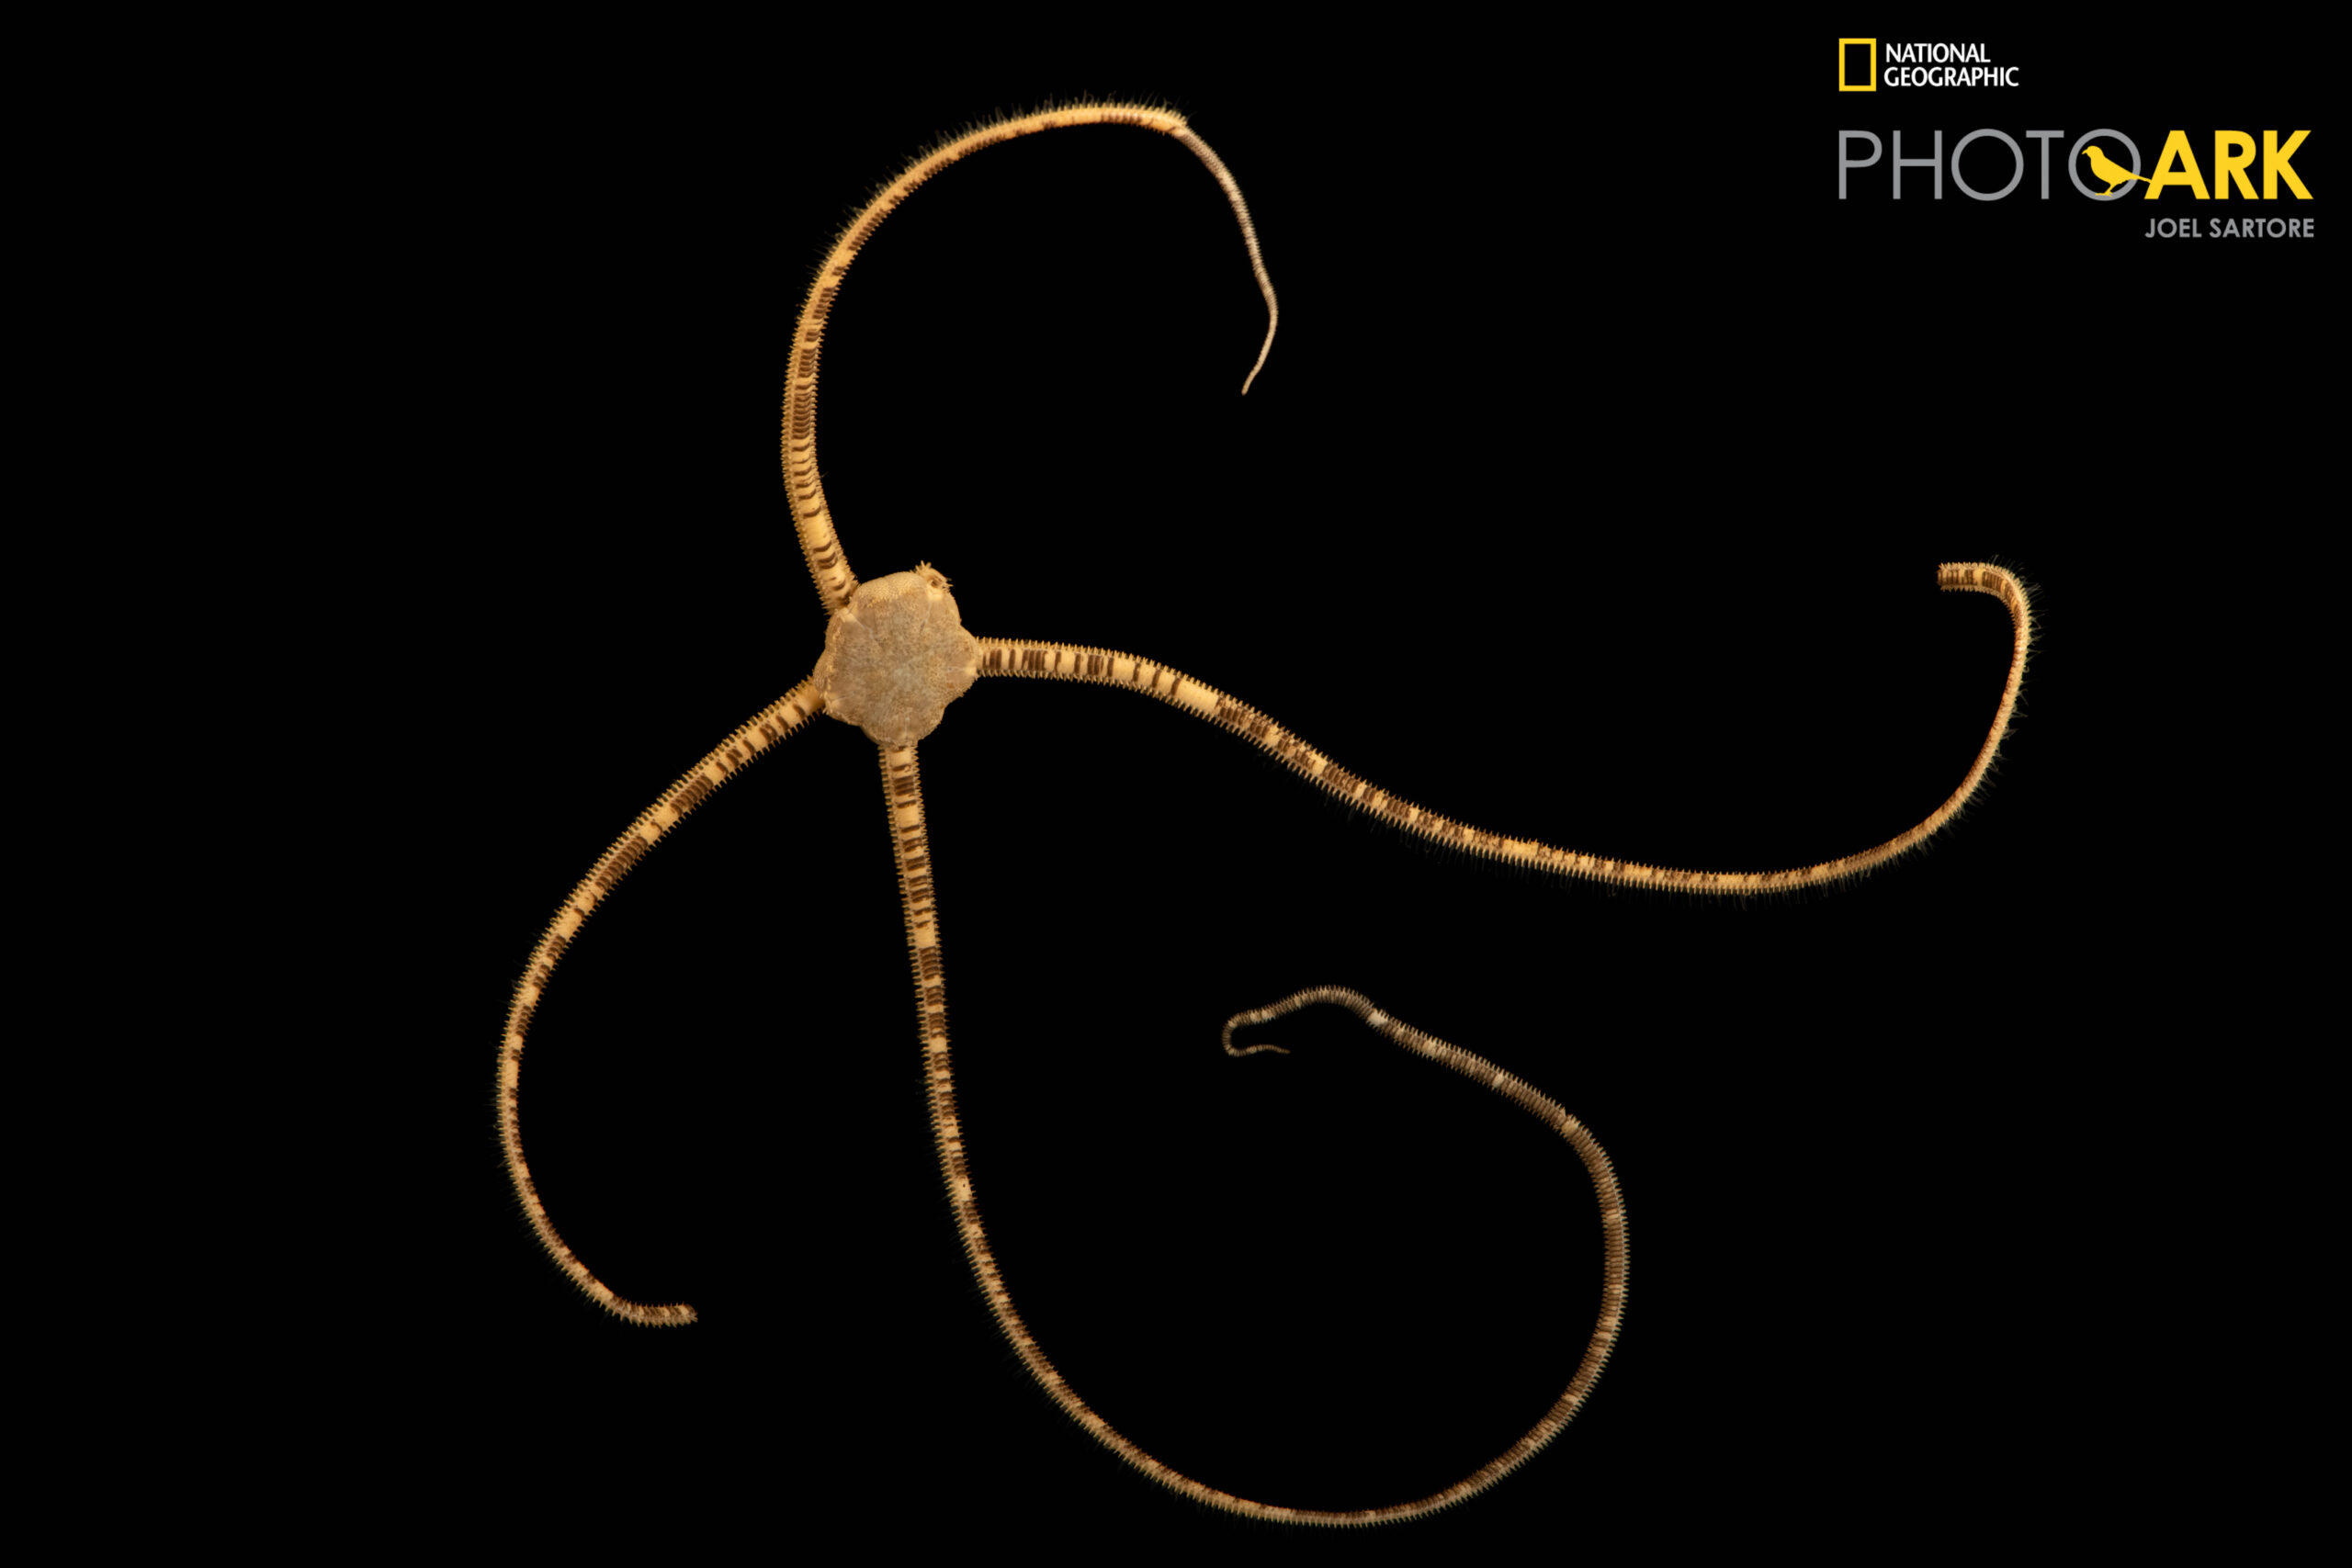 An unidentified brittle star (Ophiophragmus sp.) Gulf Specimen in Panacea, Florida.